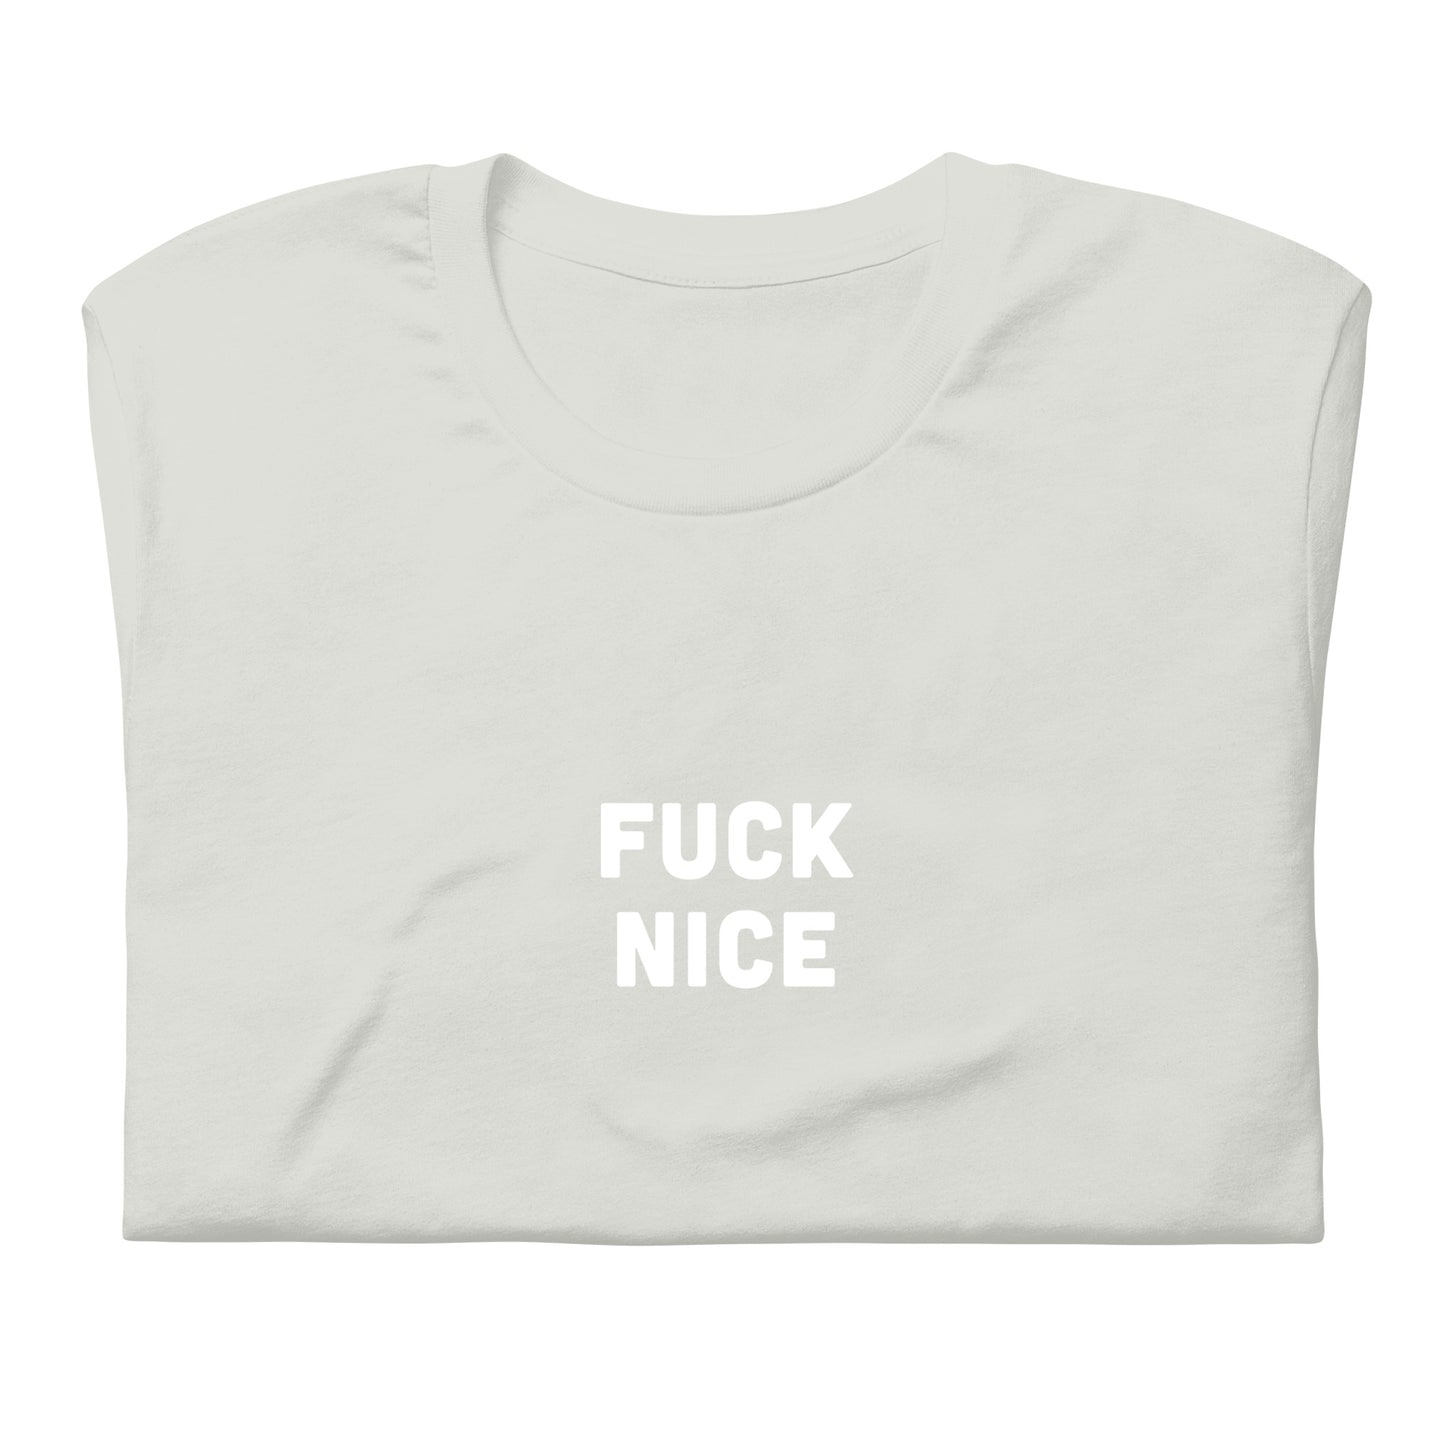 Fuck Nice T-Shirt Size 2XL Color Asphalt